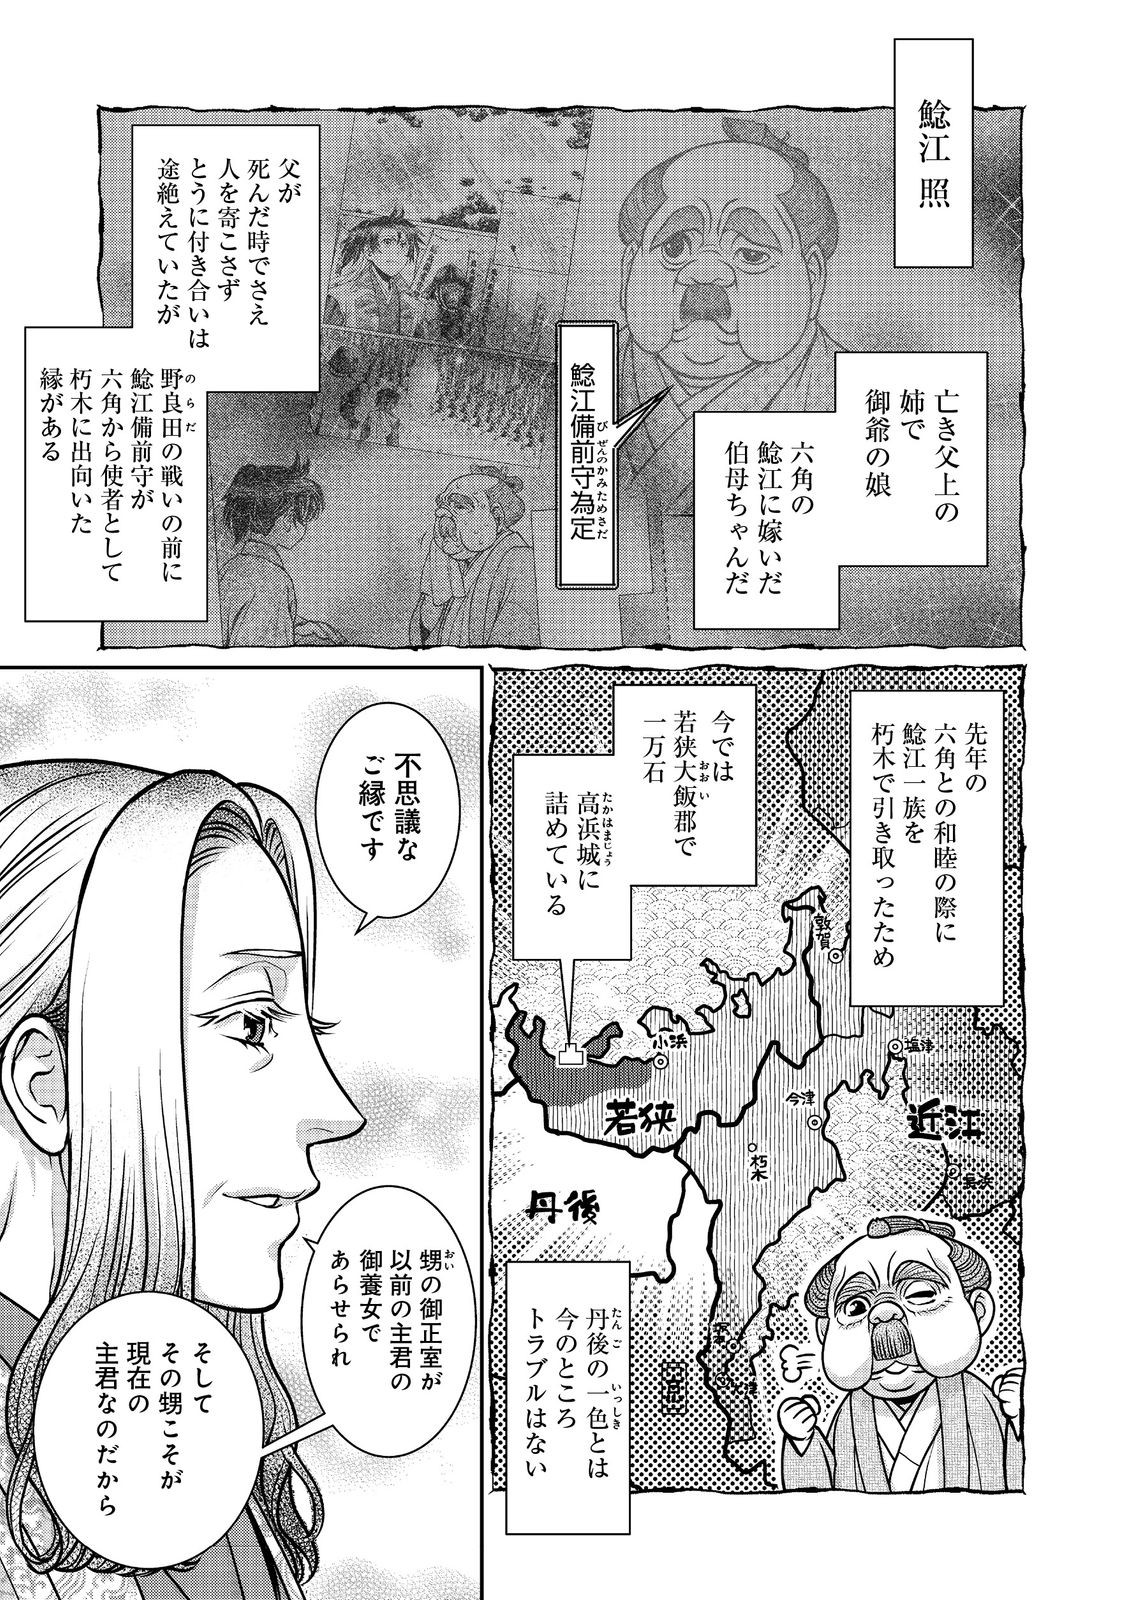 Afumi no Umi – Minamo ga Yureru Toki - Chapter 36 - Page 7